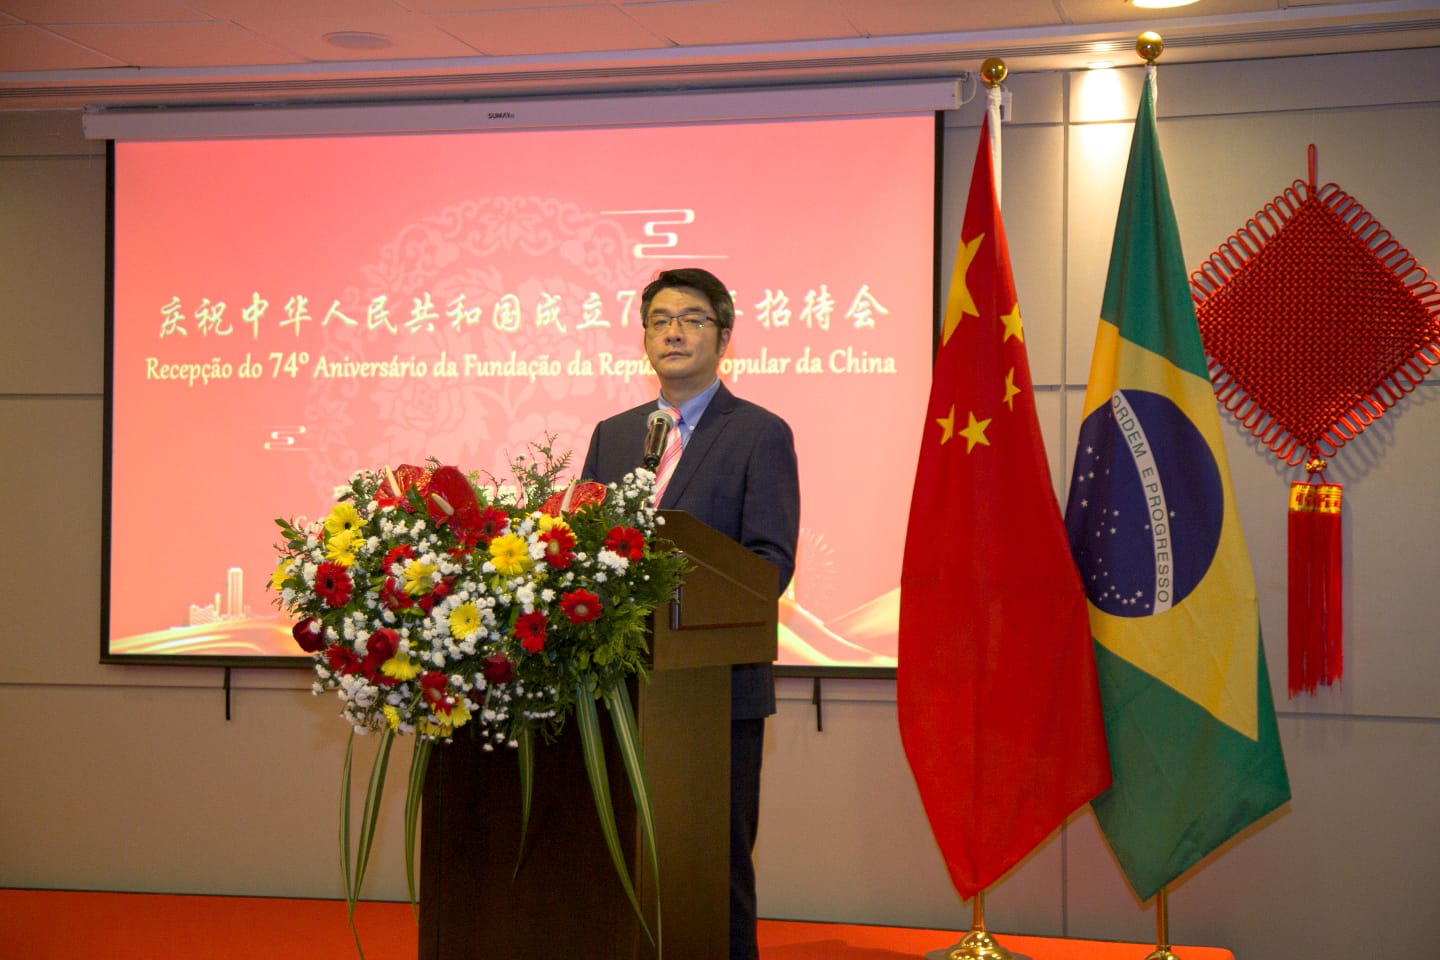 Cnsul-geral interino da China no Recife, Wang Ke, comandou festa de aniversrio dos 74 anos do pas (Foto: Divulgao)